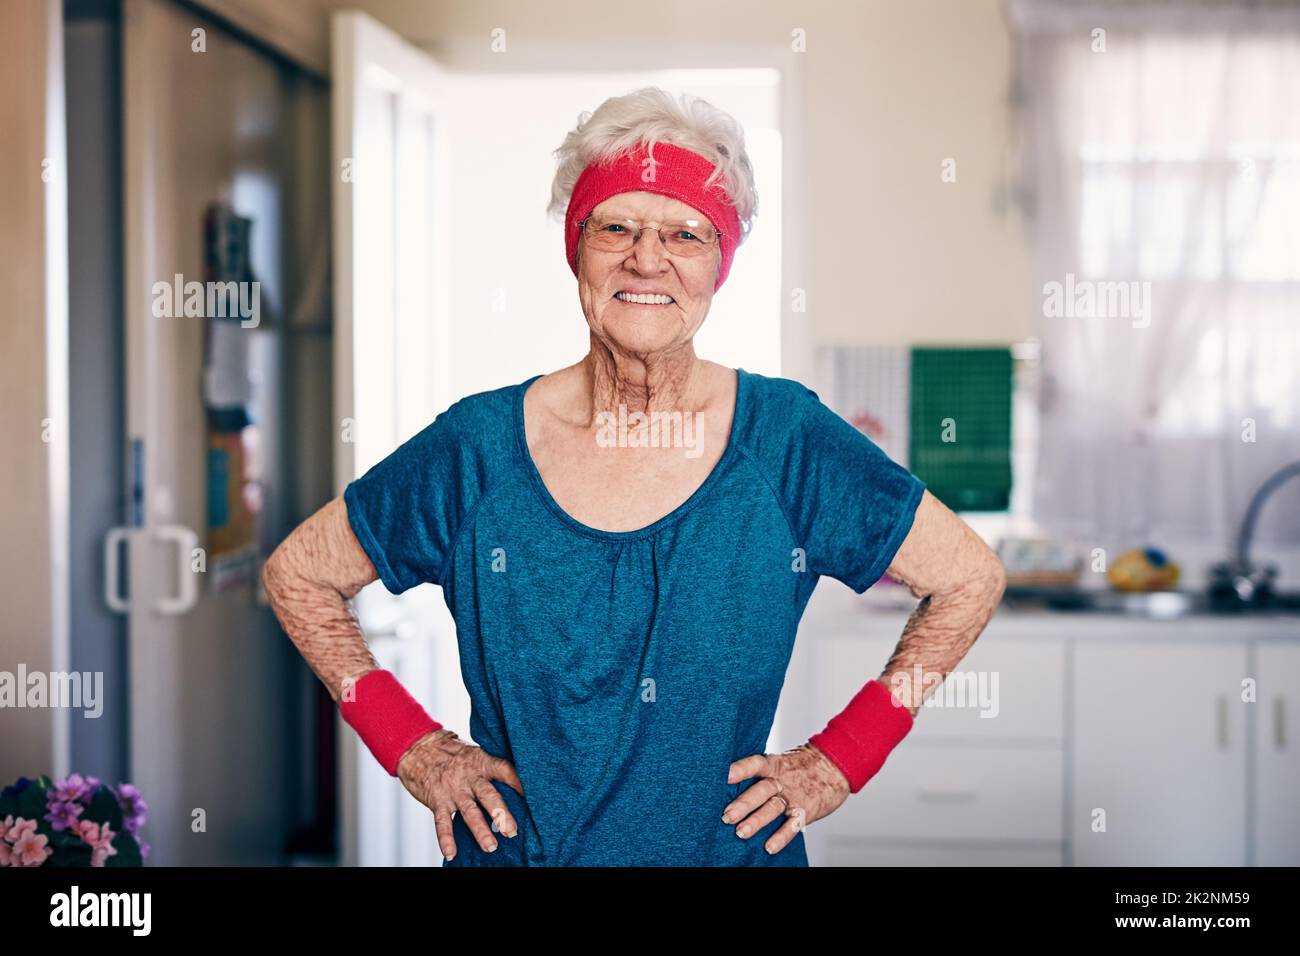 Mantenere uno stile di vita attivo non importa l'età. Shot di una donna anziana che si esercita a casa. Foto Stock